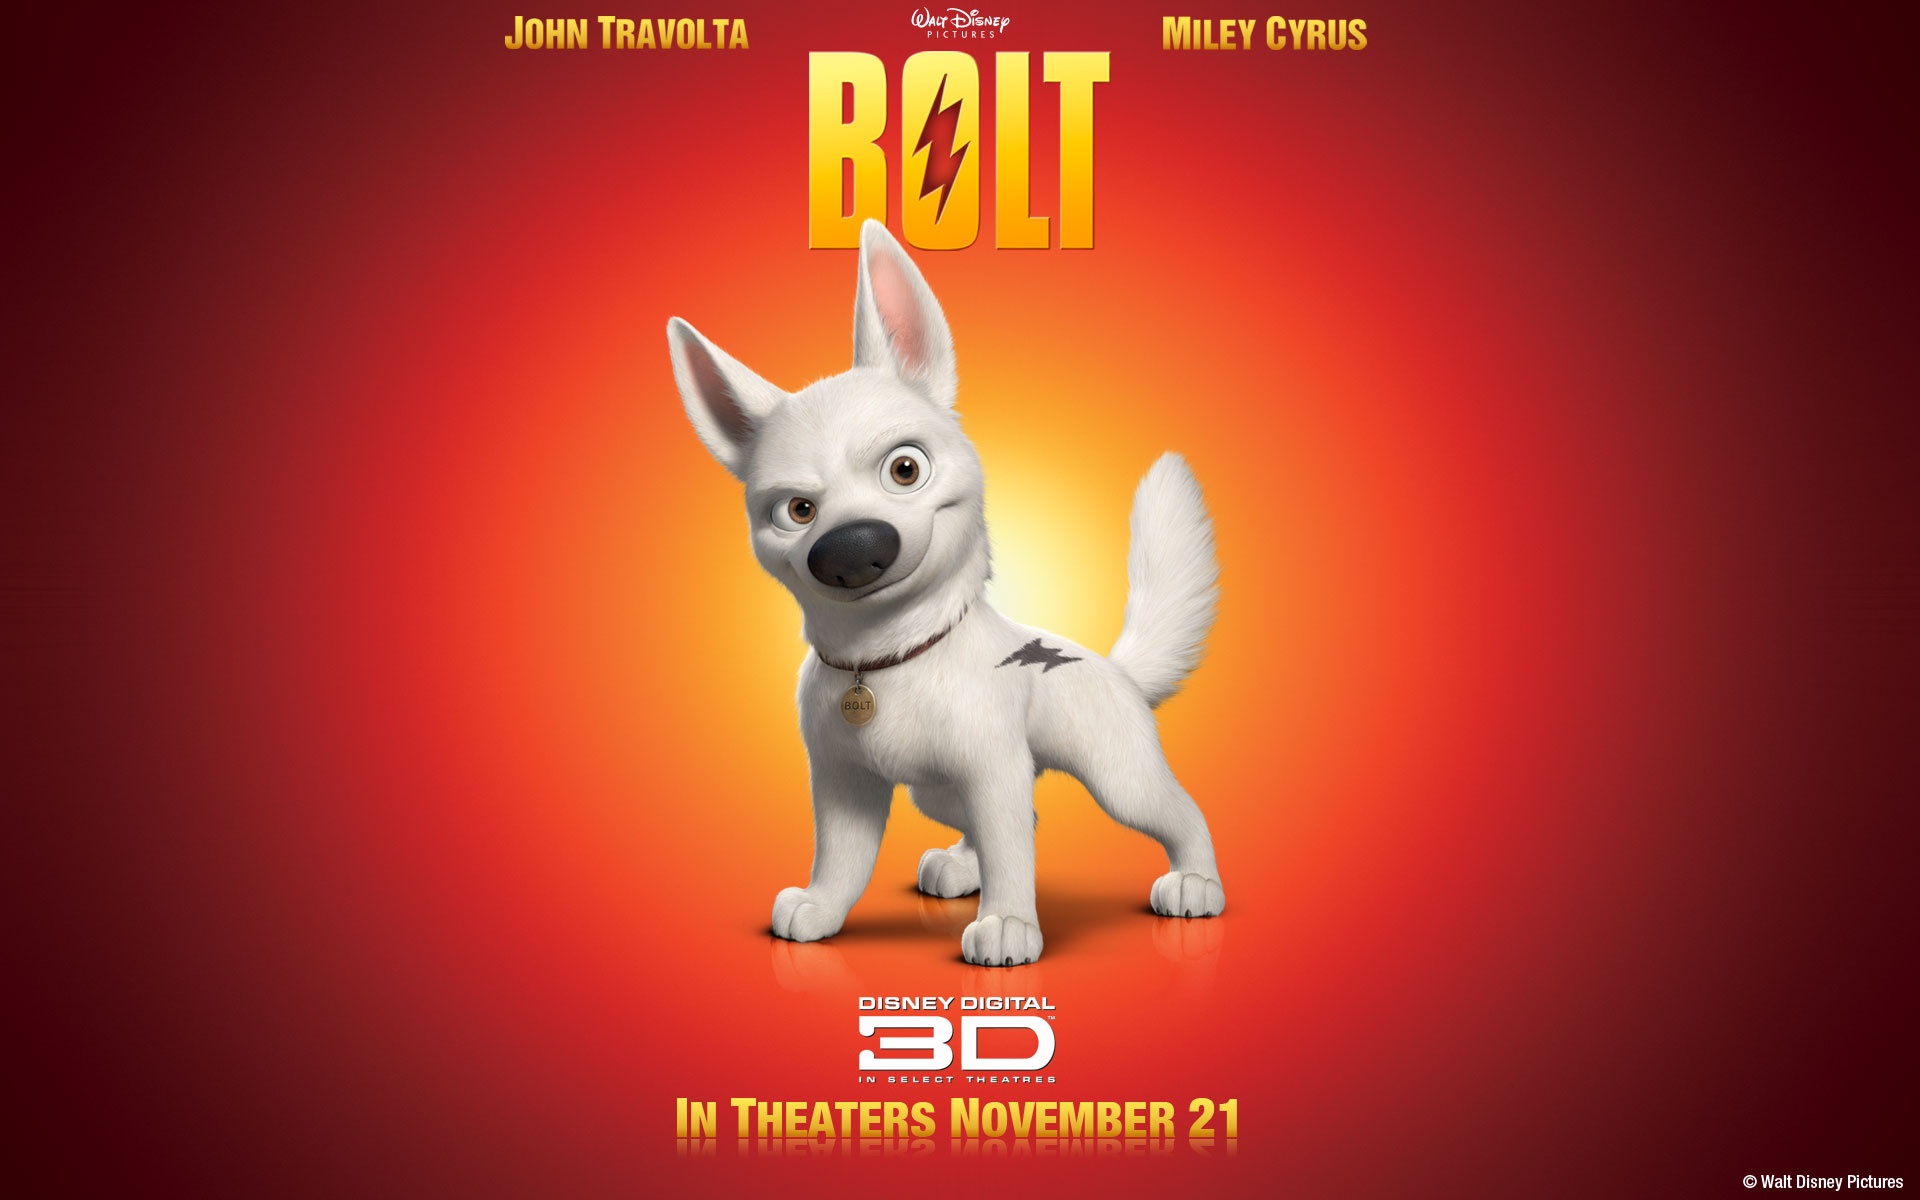 治愈佳作《一条狗的使命2》曝预告，定档5.17同步北美上映 - 360娱乐，你开心就好